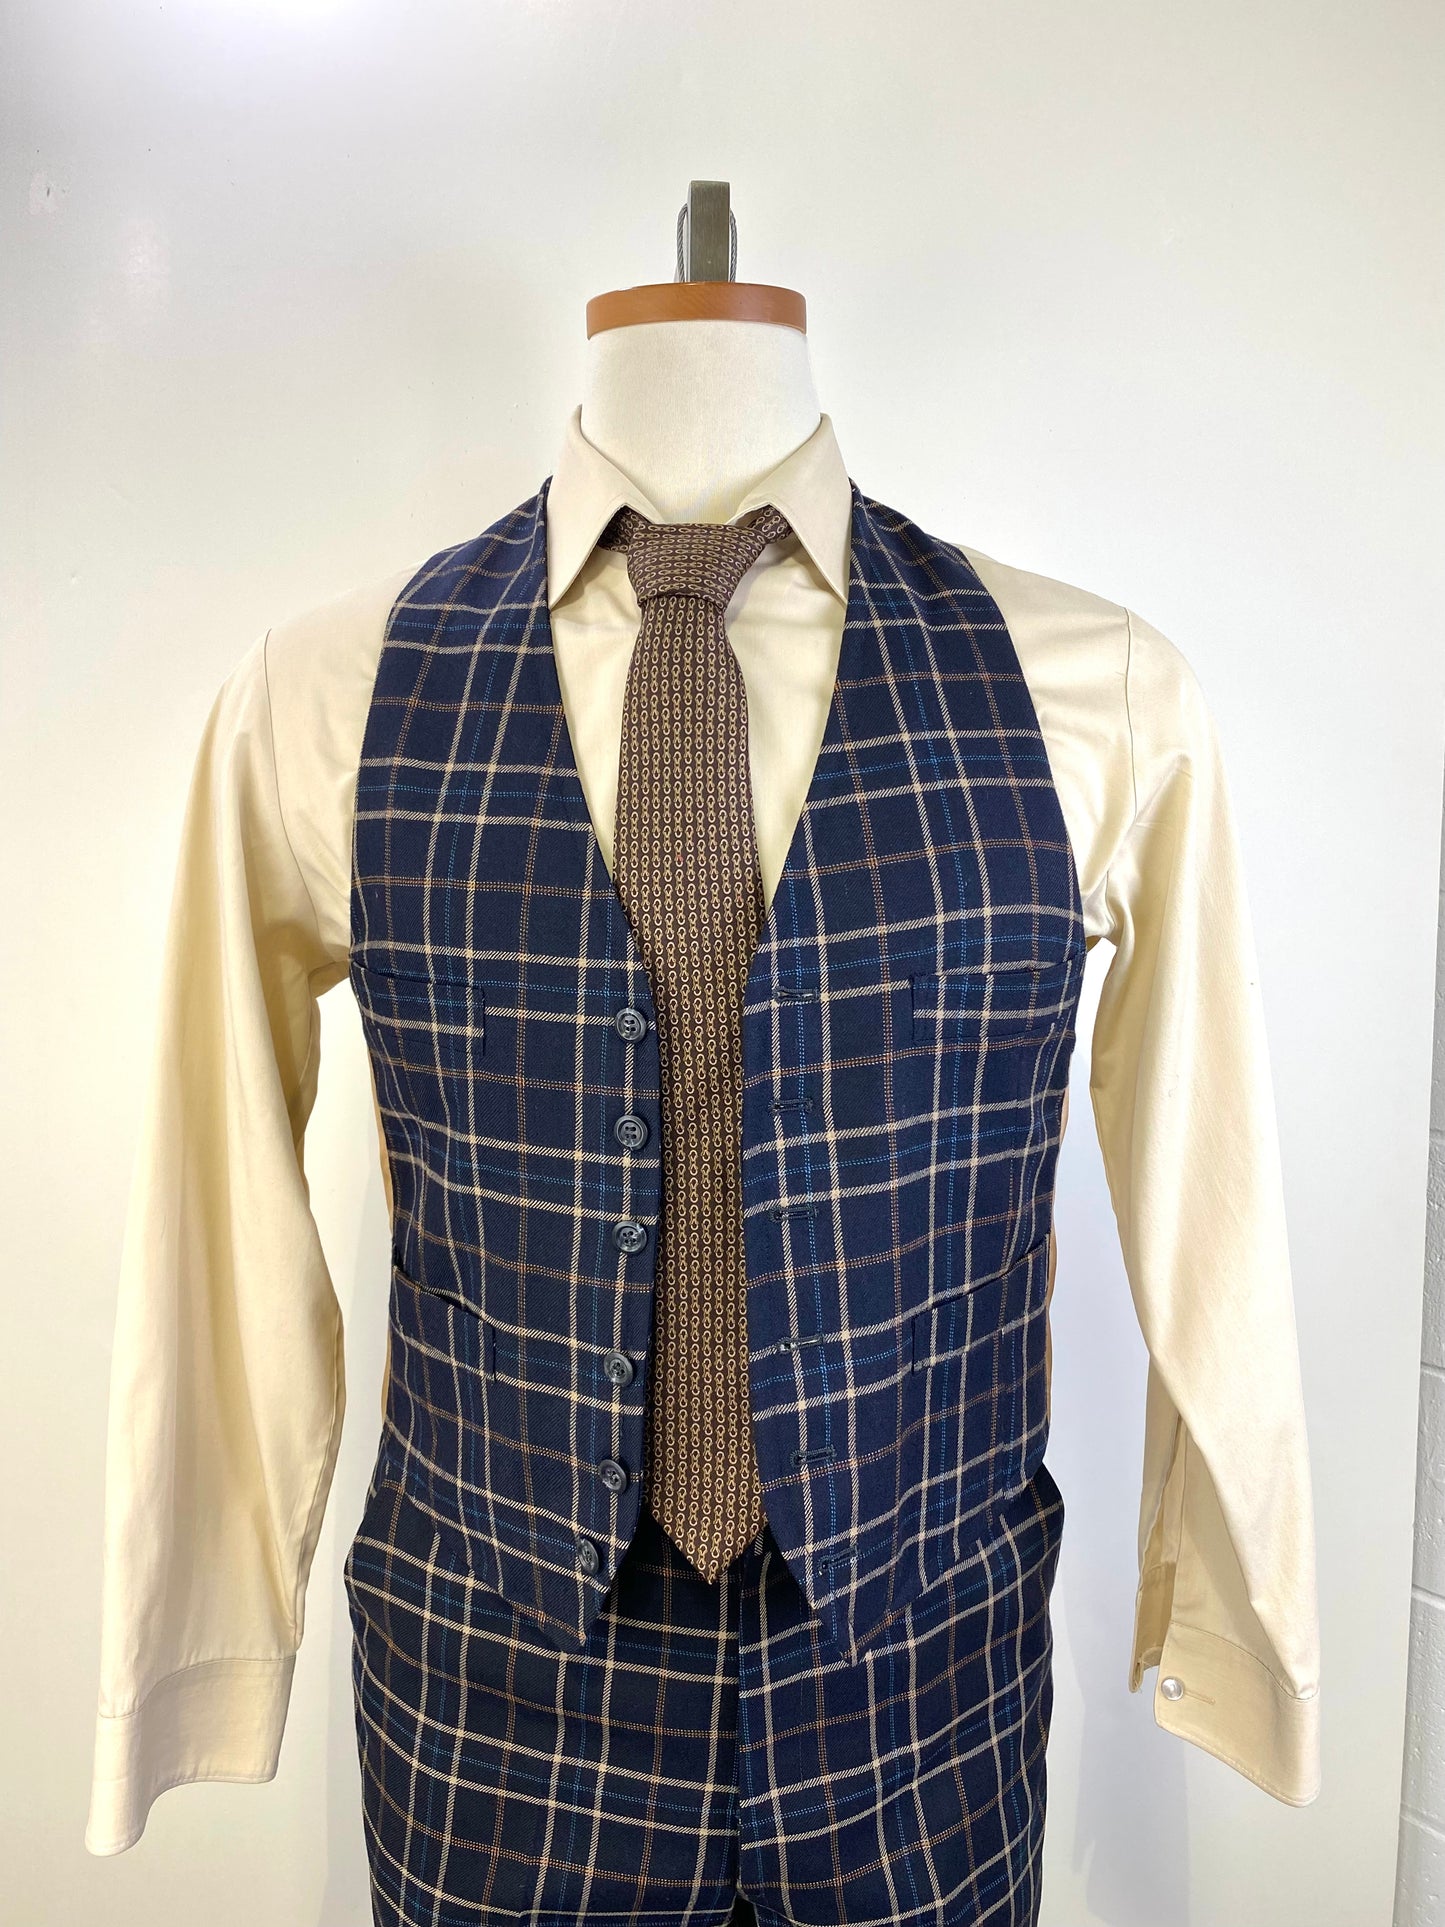 1970s Vintage Men's Suit, Navy/ Beige Plaid 3-Piece Suit, Johnny Carson for Kleinhan's, C40